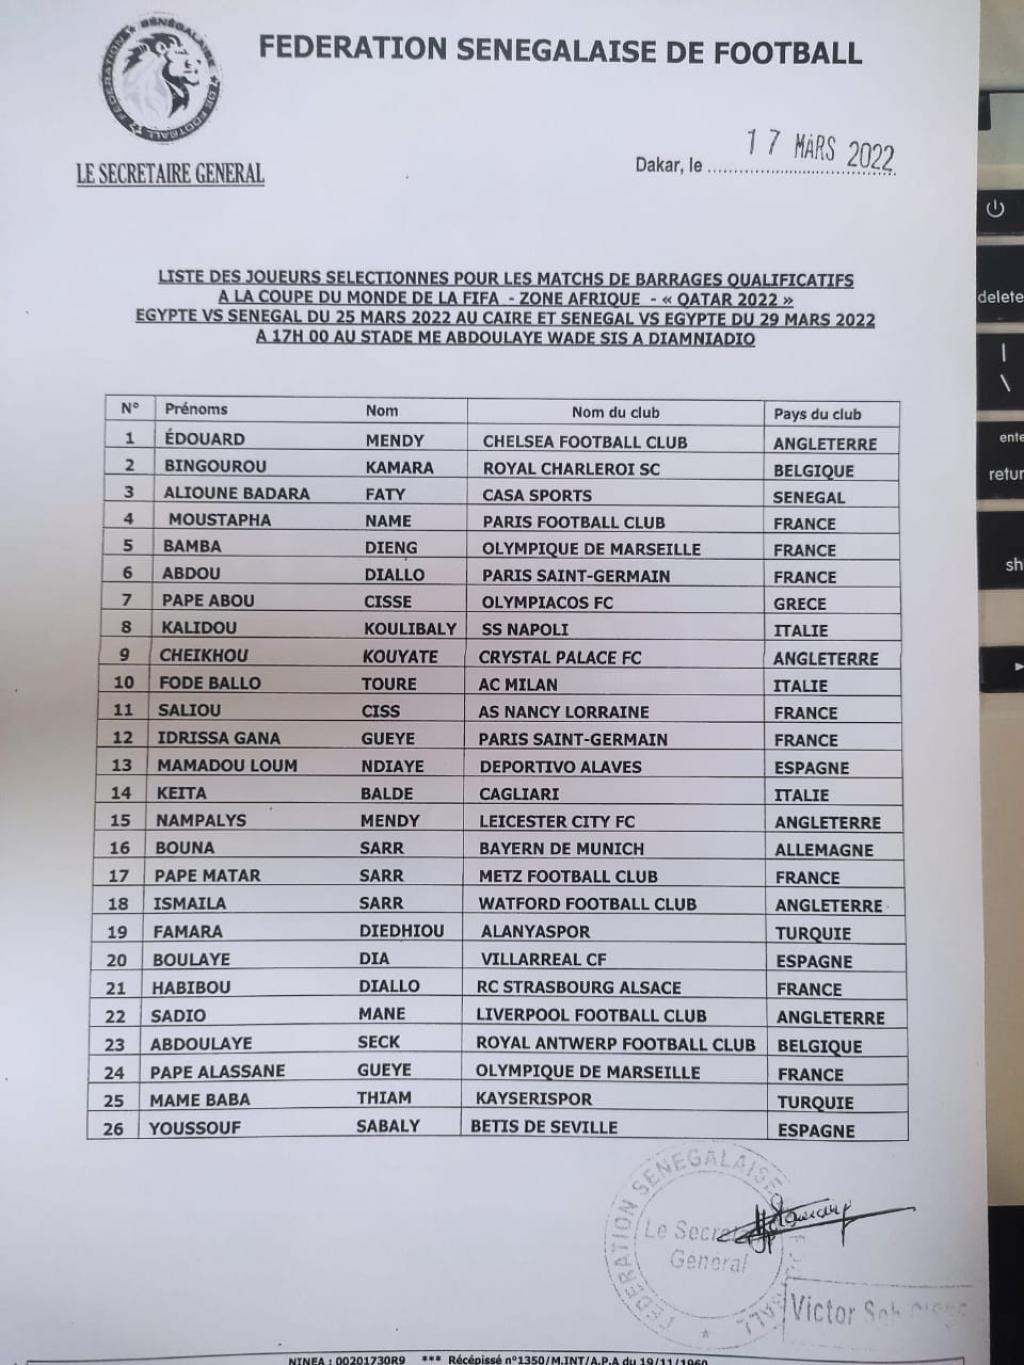 Le sélectionneur national de l'équipe du Sénégal, Aliou Cissé a convoqué 26 joueurs pour la double confrontation contre l'Egypte, comptant pour les barrages qualificatifs à la Coupe du monde 2022.